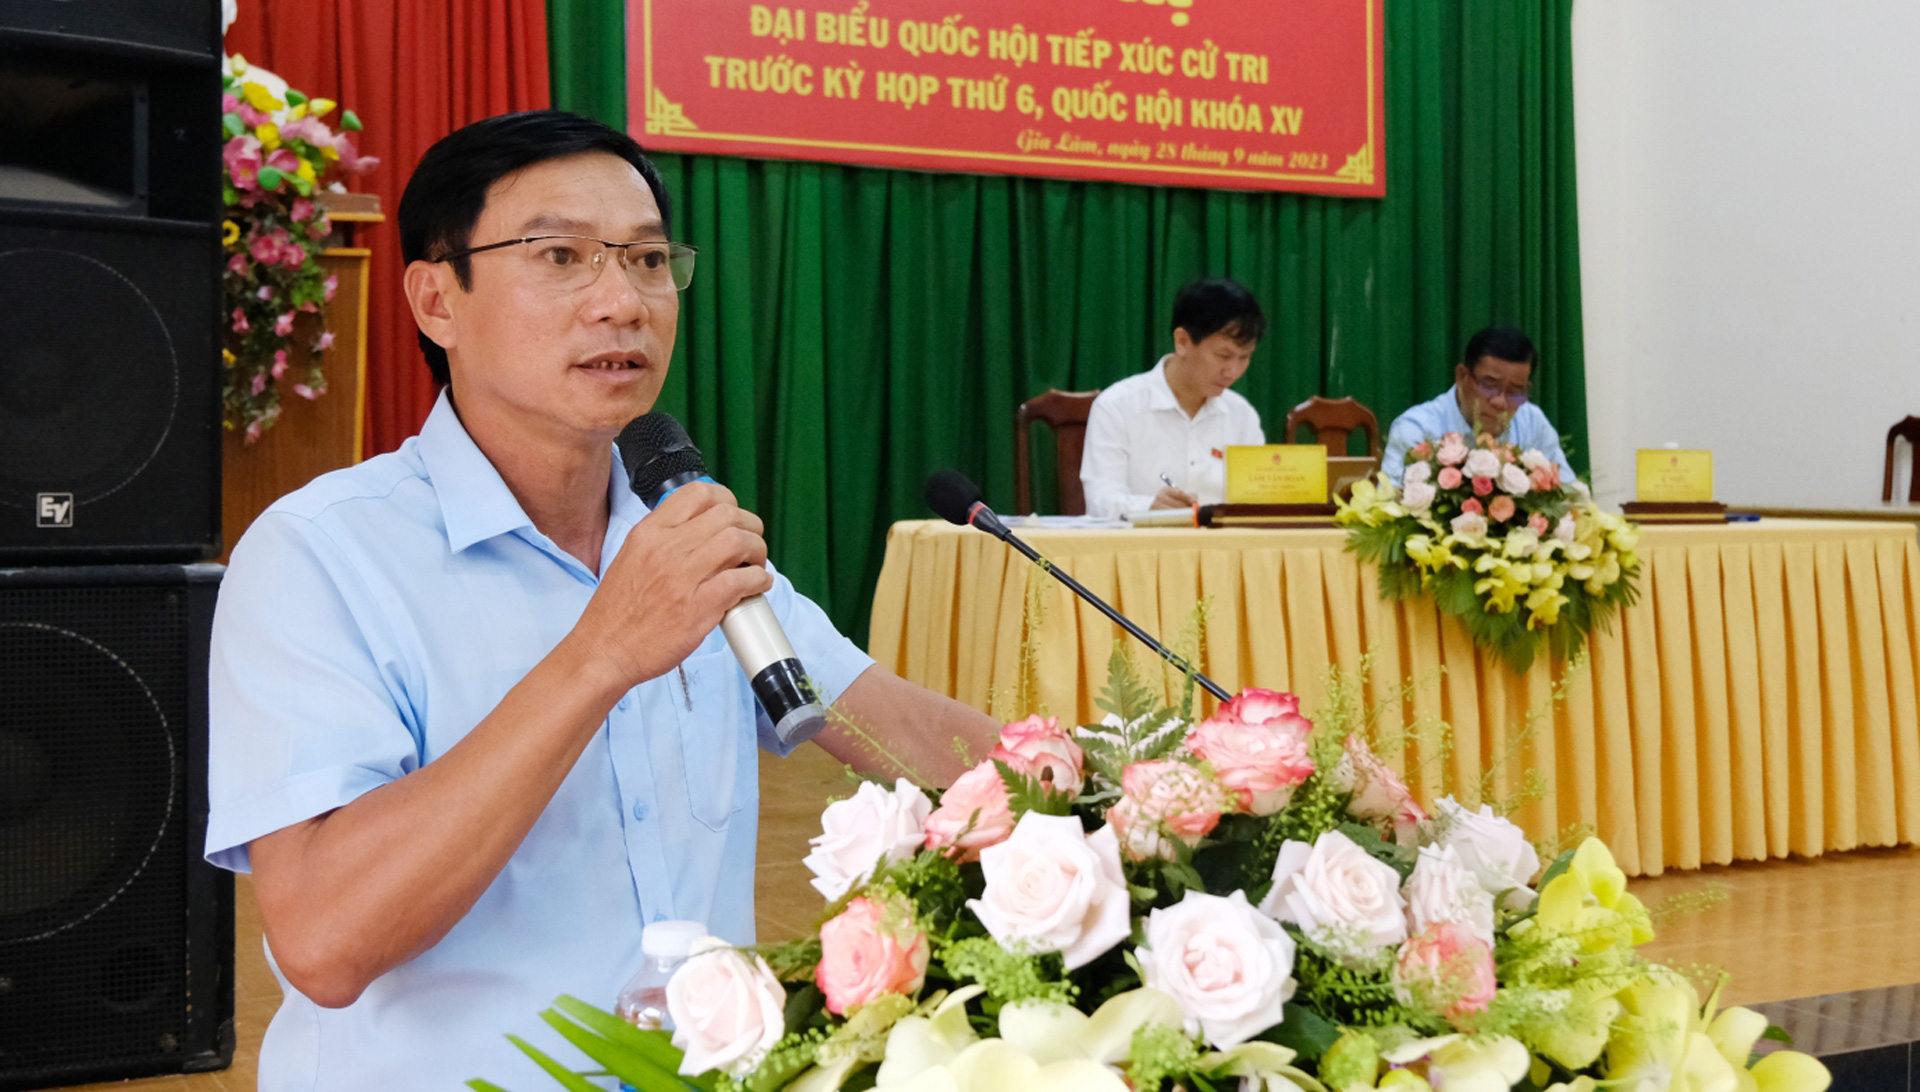 Ông Nguyễn Minh An – Phó Chủ tịch UBND huyện Lâm Hà giải trình một số vấn đề cử tri đặt ra